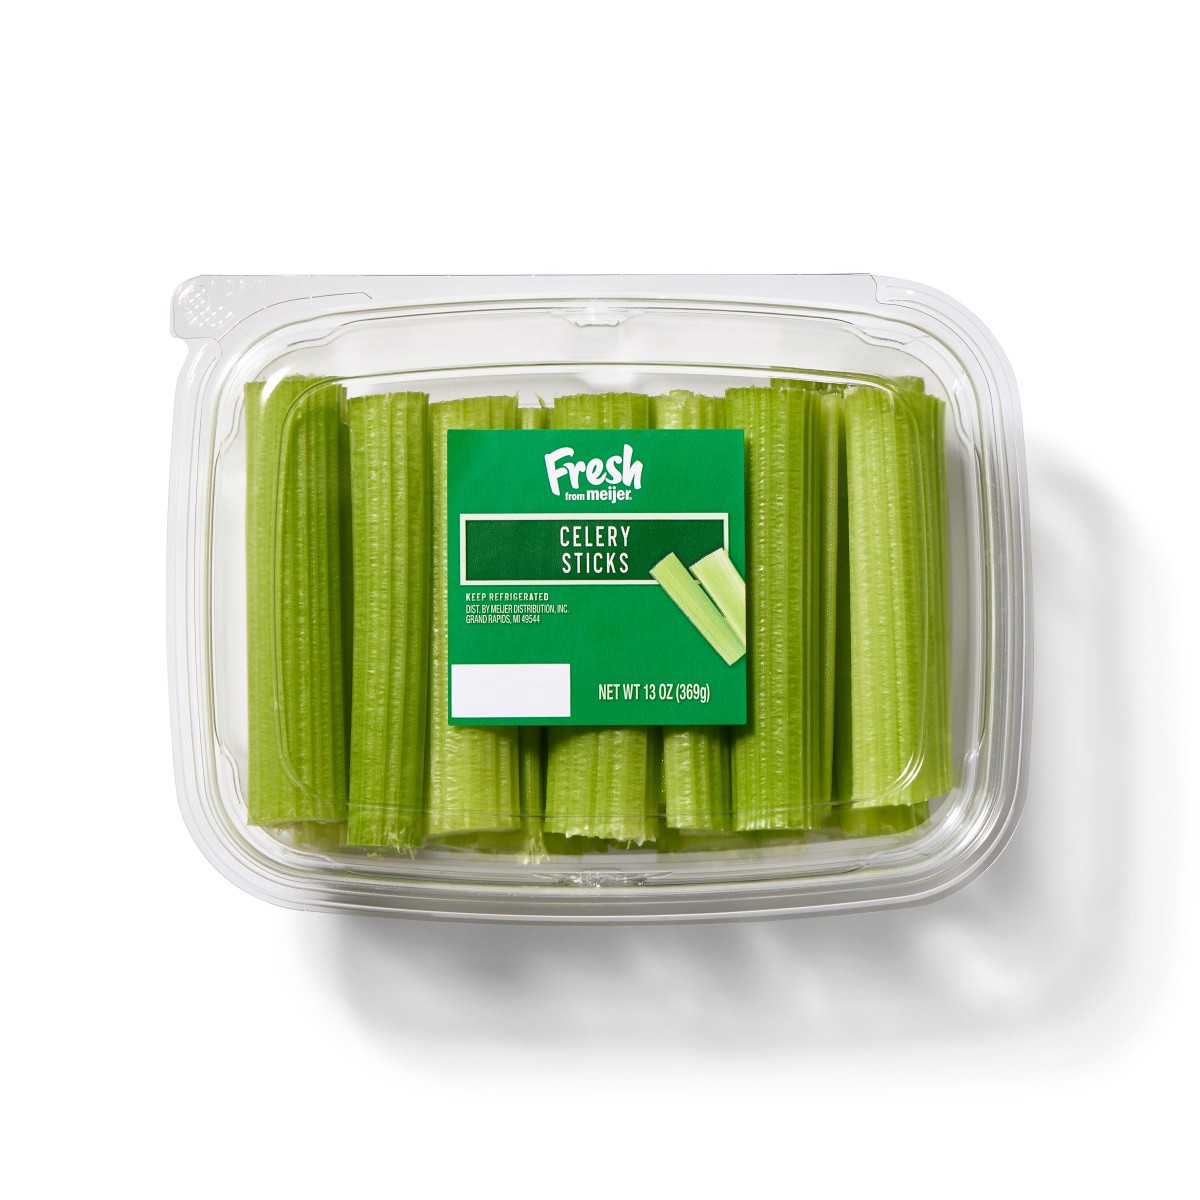 slide 1 of 13, Fresh from Meijer Celery Sticks, 13 oz